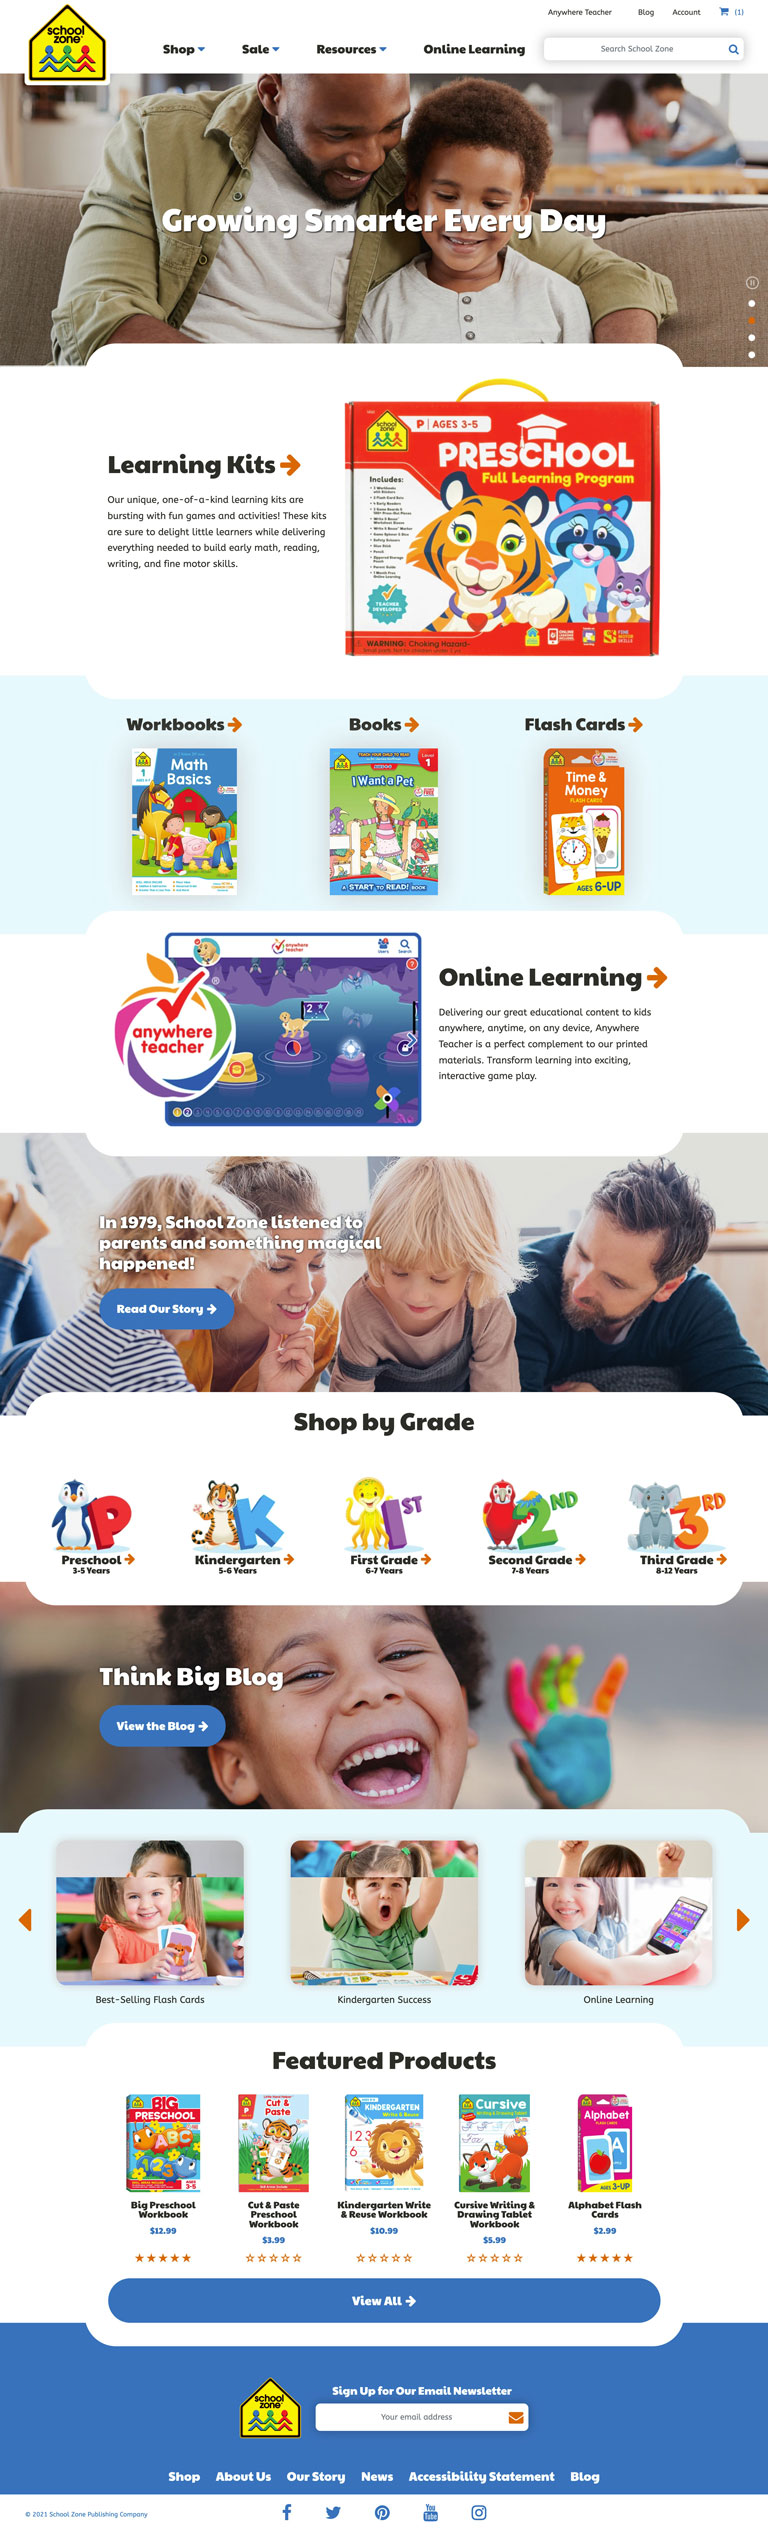 Schoolzone Homepage Desktop Website Design